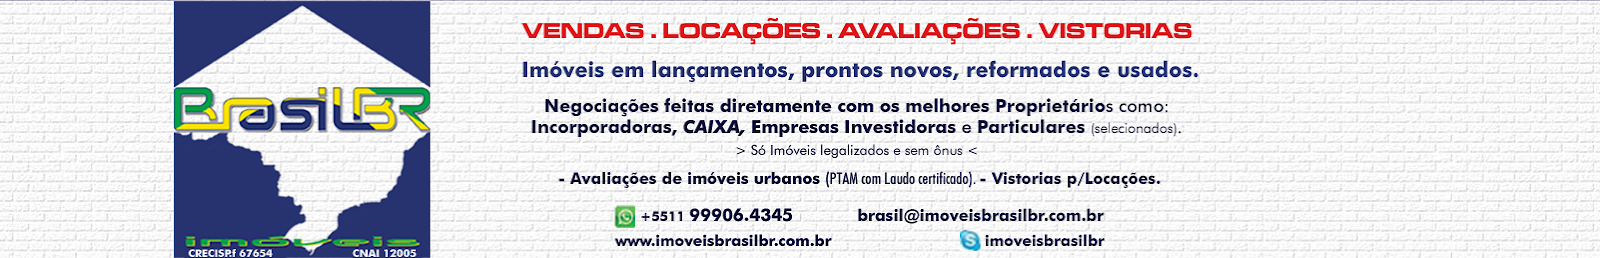 BrasilBR Imóveis em Lançamentos, em obras ou prontos e Avaliações Imobiliárias (PTAM).